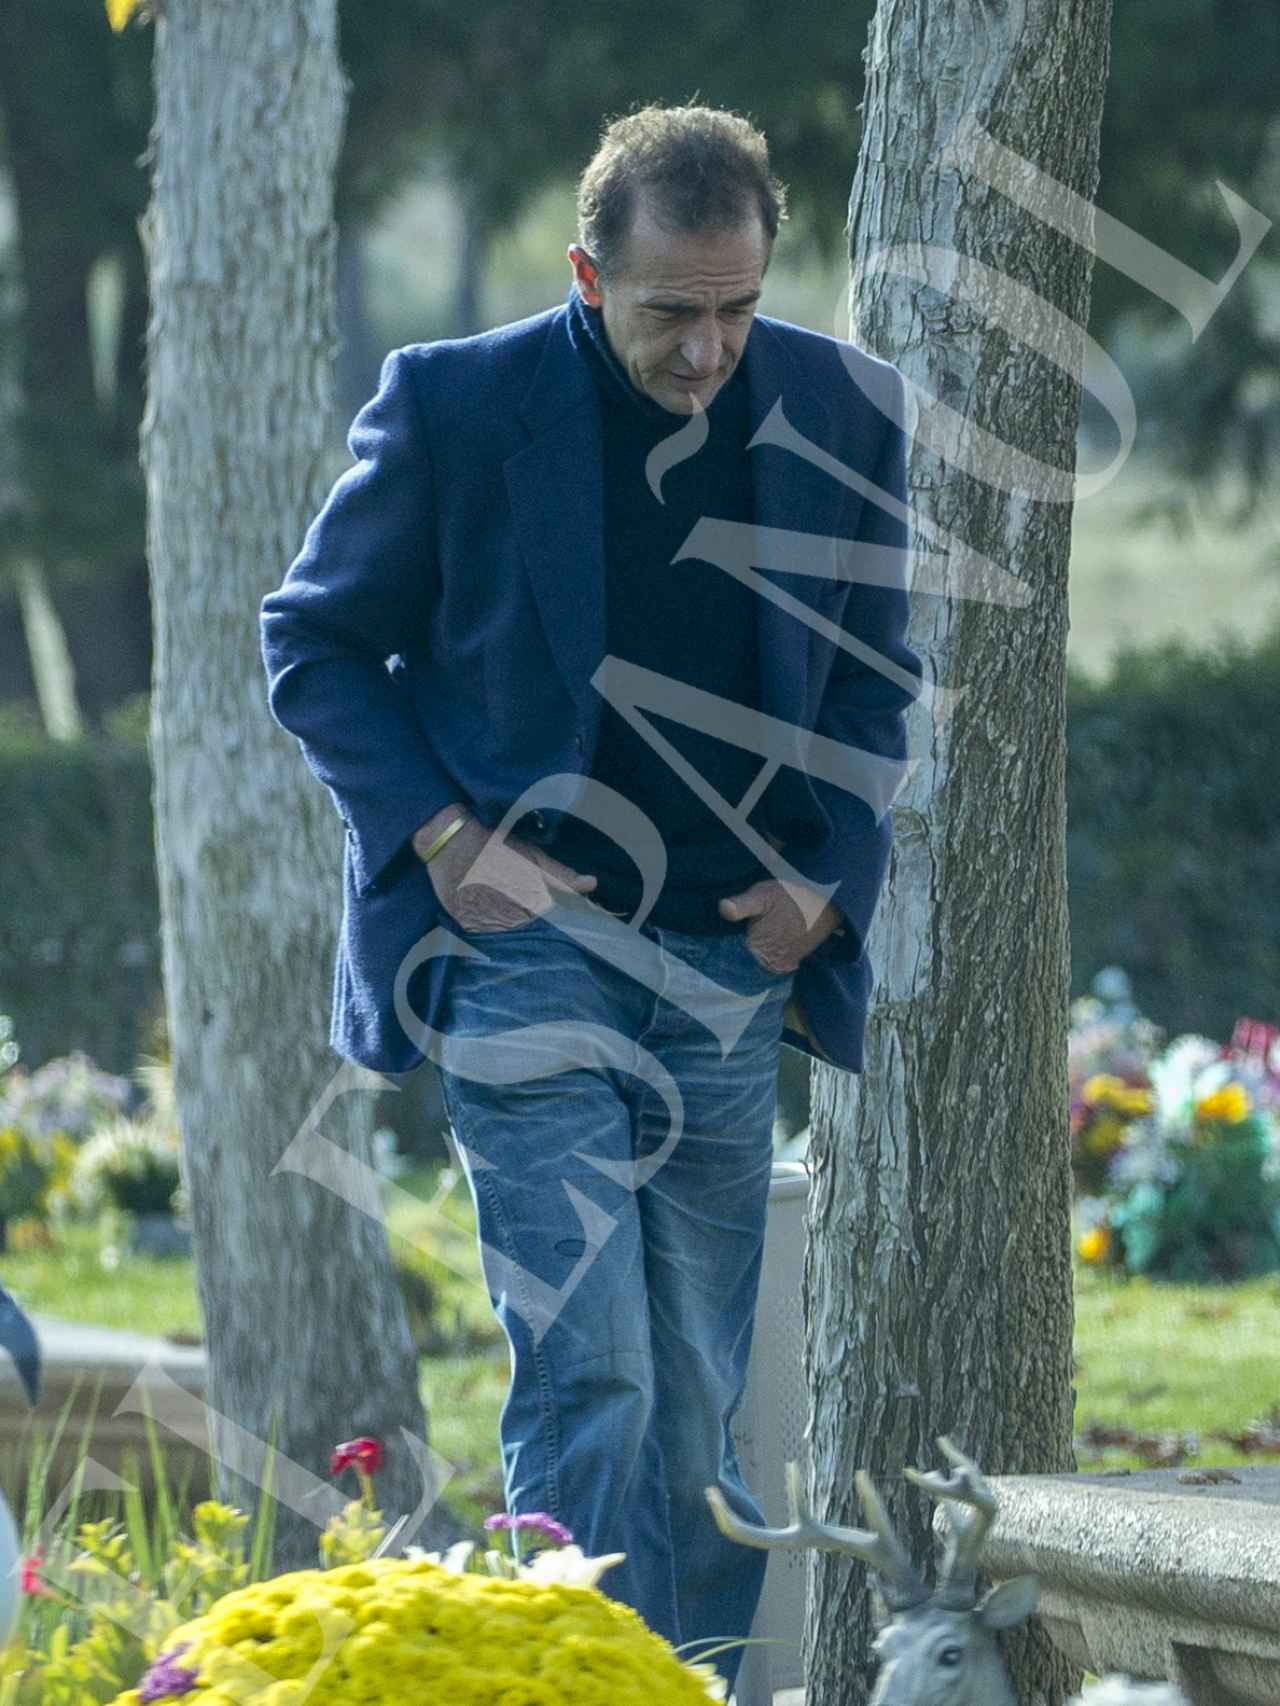 Durante su estancia en el cementerio, Alessandro Lequio se mantuvo con el rostro cabizbajo.